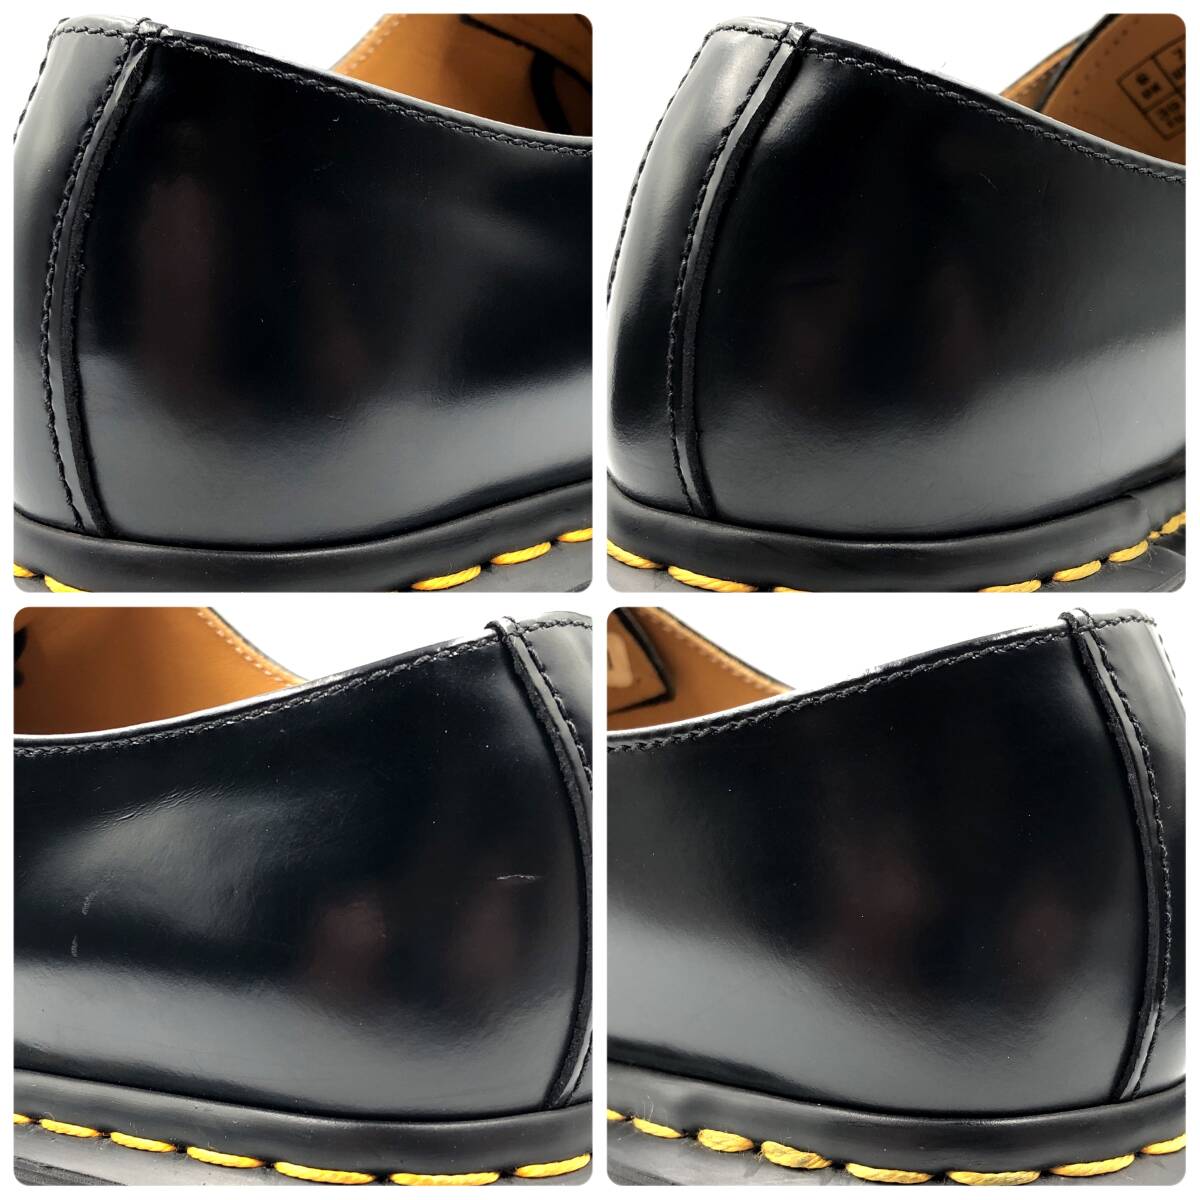  prompt decision Dr.Martens Dr. Martens 24cm UK6 US7 1461 men's leather shoes 3 hole plain tu black black leather shoes leather shoes business 